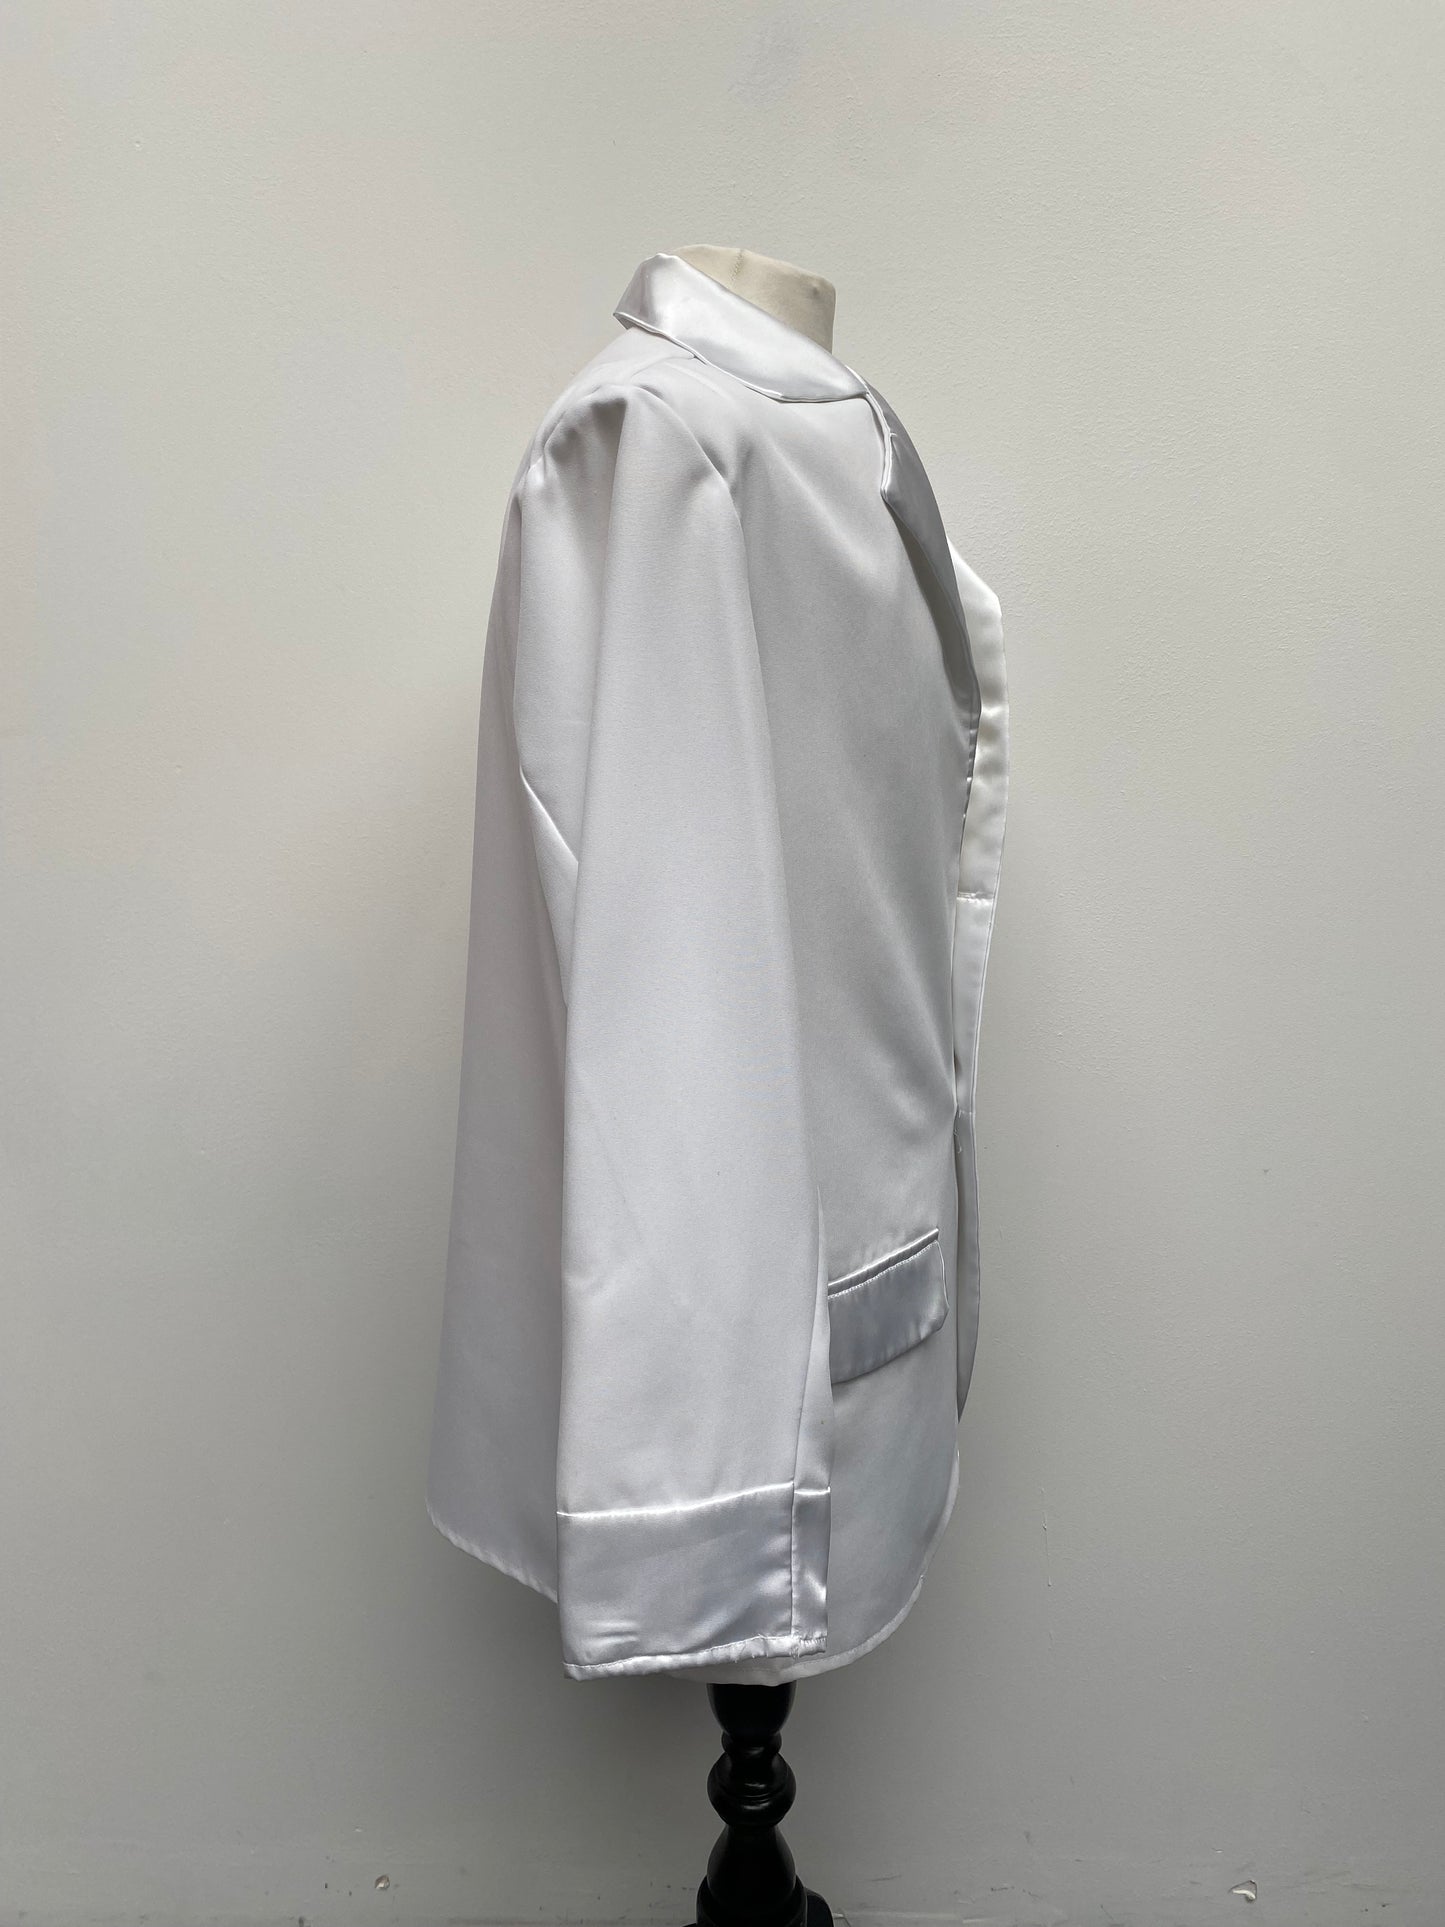 70s Men's White Suit Size Medium - Ex Hire Fancy Dress Costume